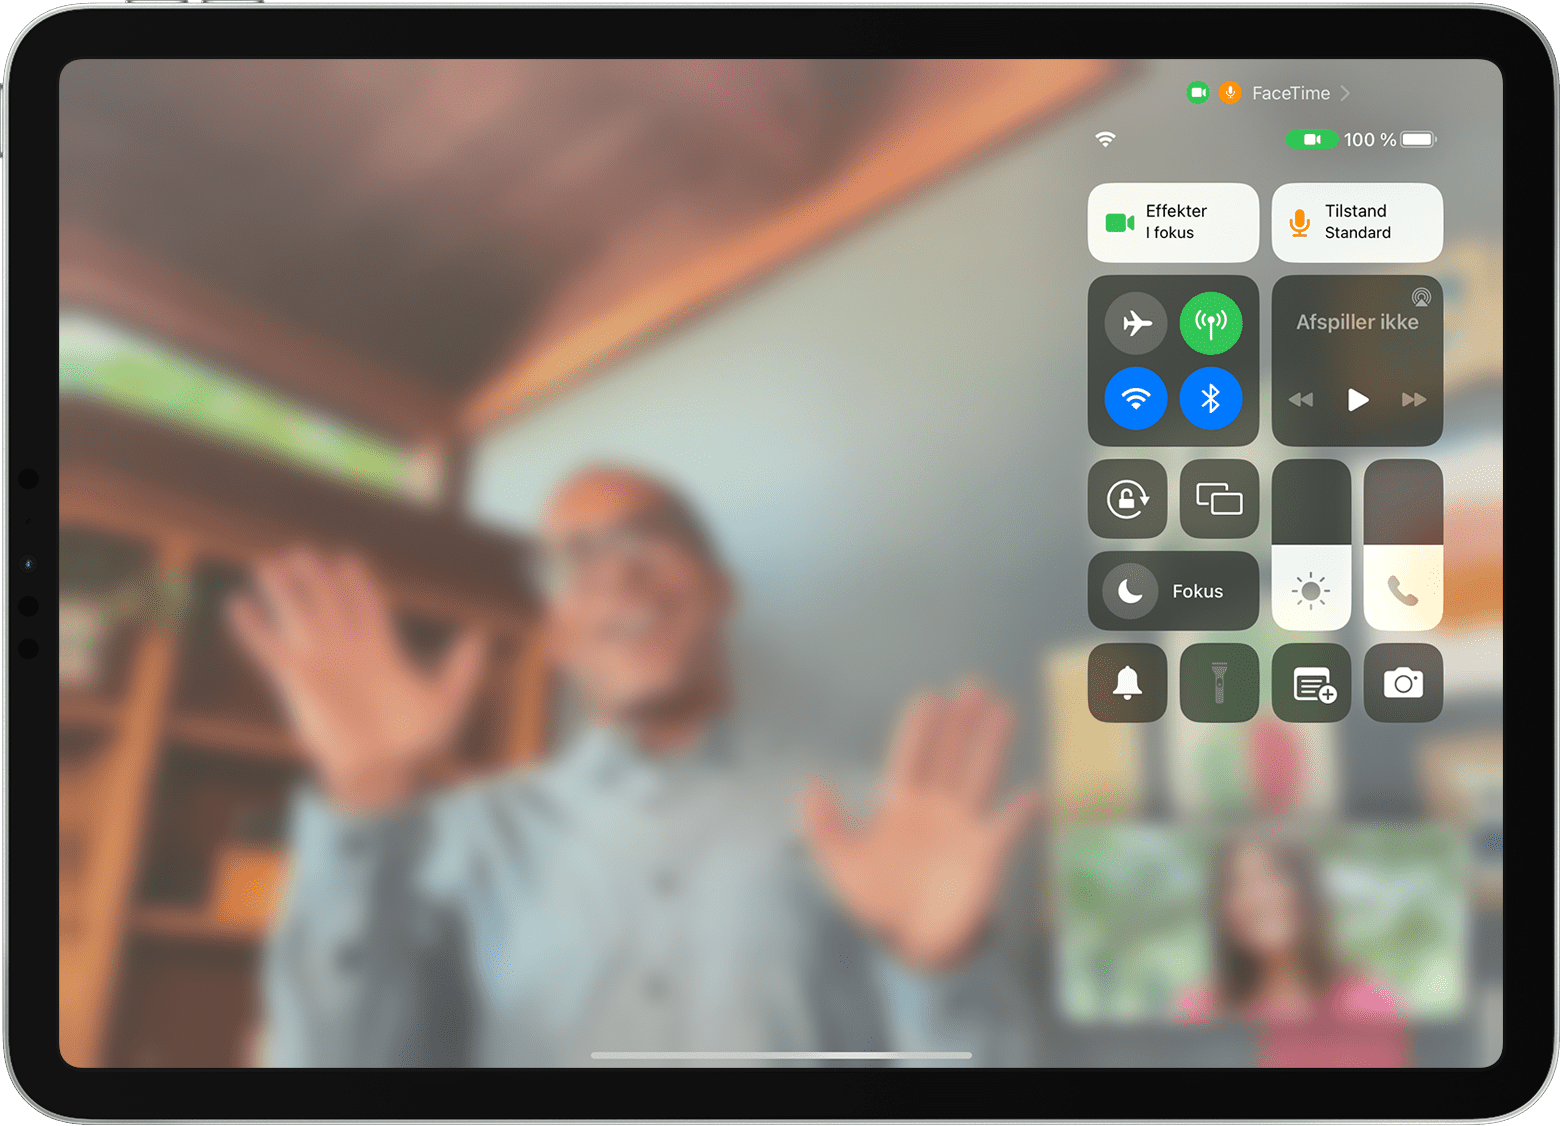 iPad-skærm, der viser et FaceTime-opkald med Kontrolcenter synligt, herunder knappen Effekter